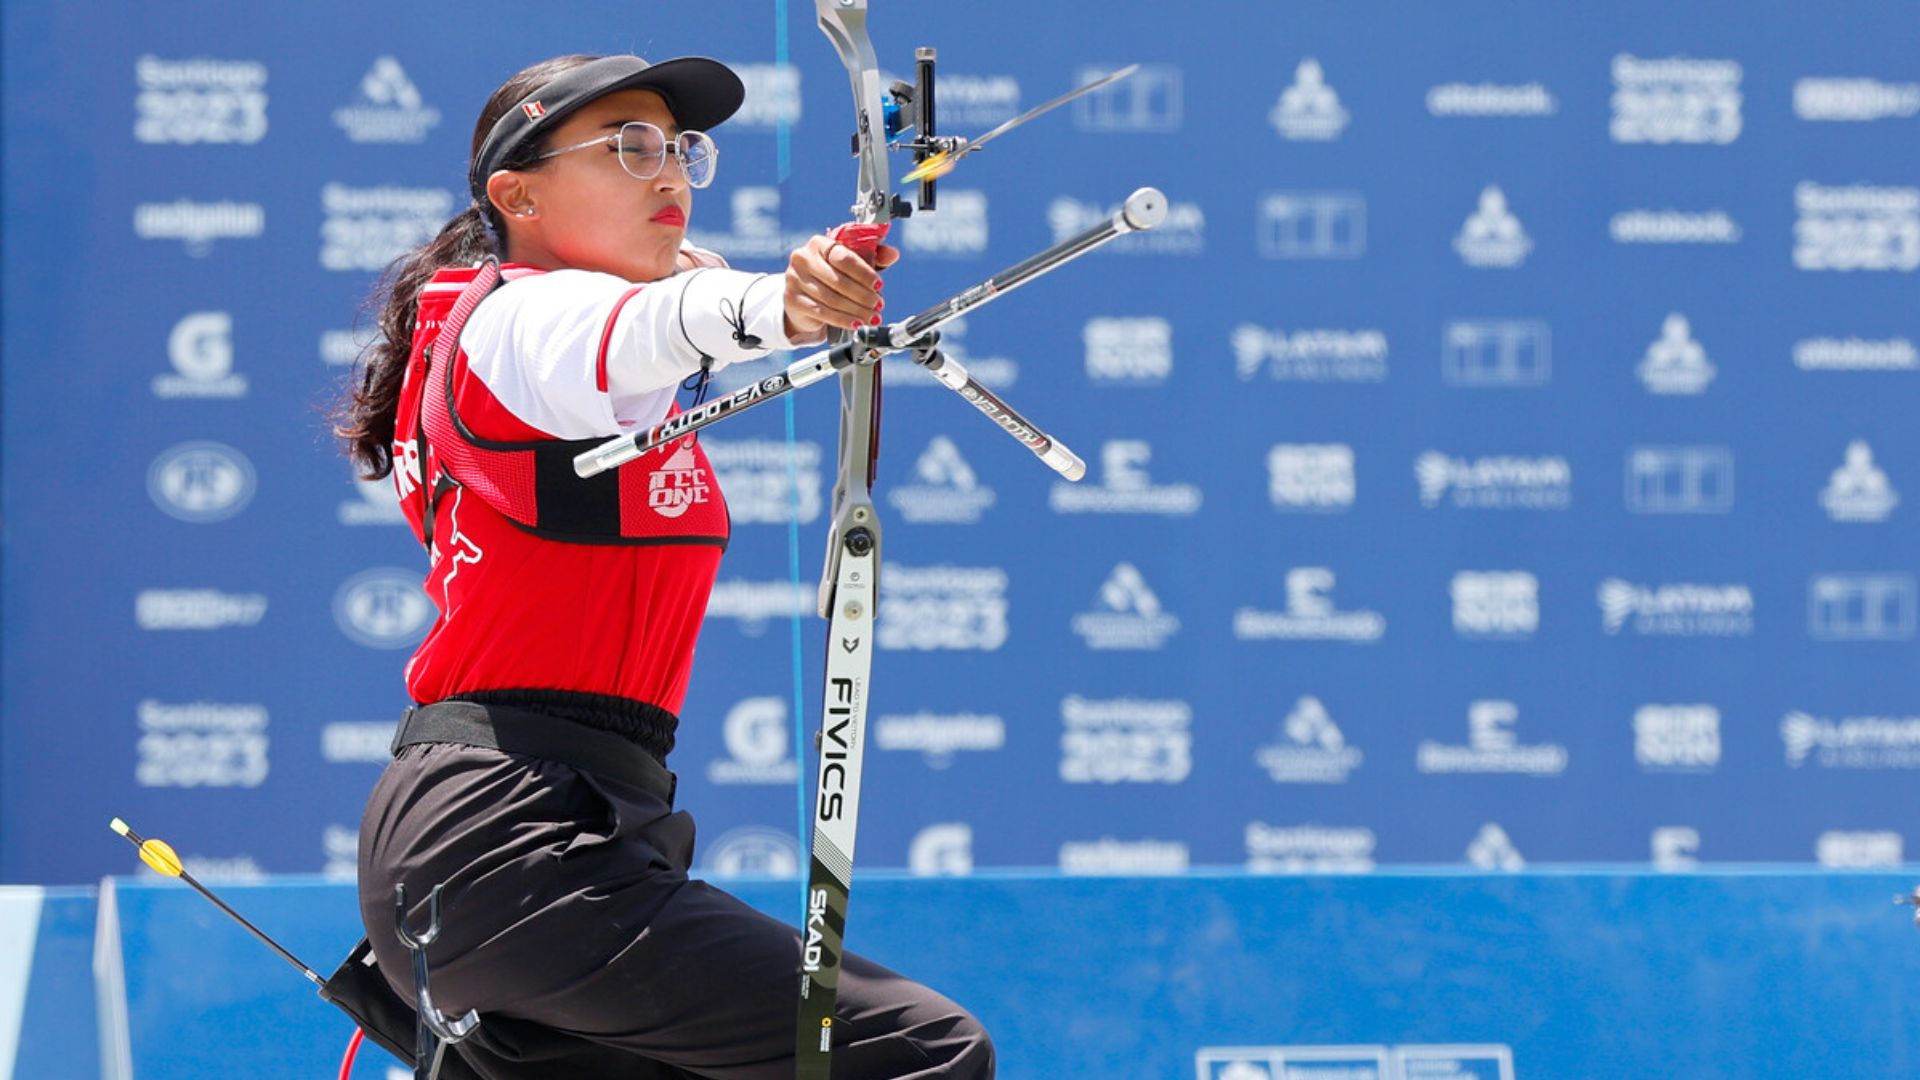 Para Archery: Peru Wins Gold in Female's Recurve Open